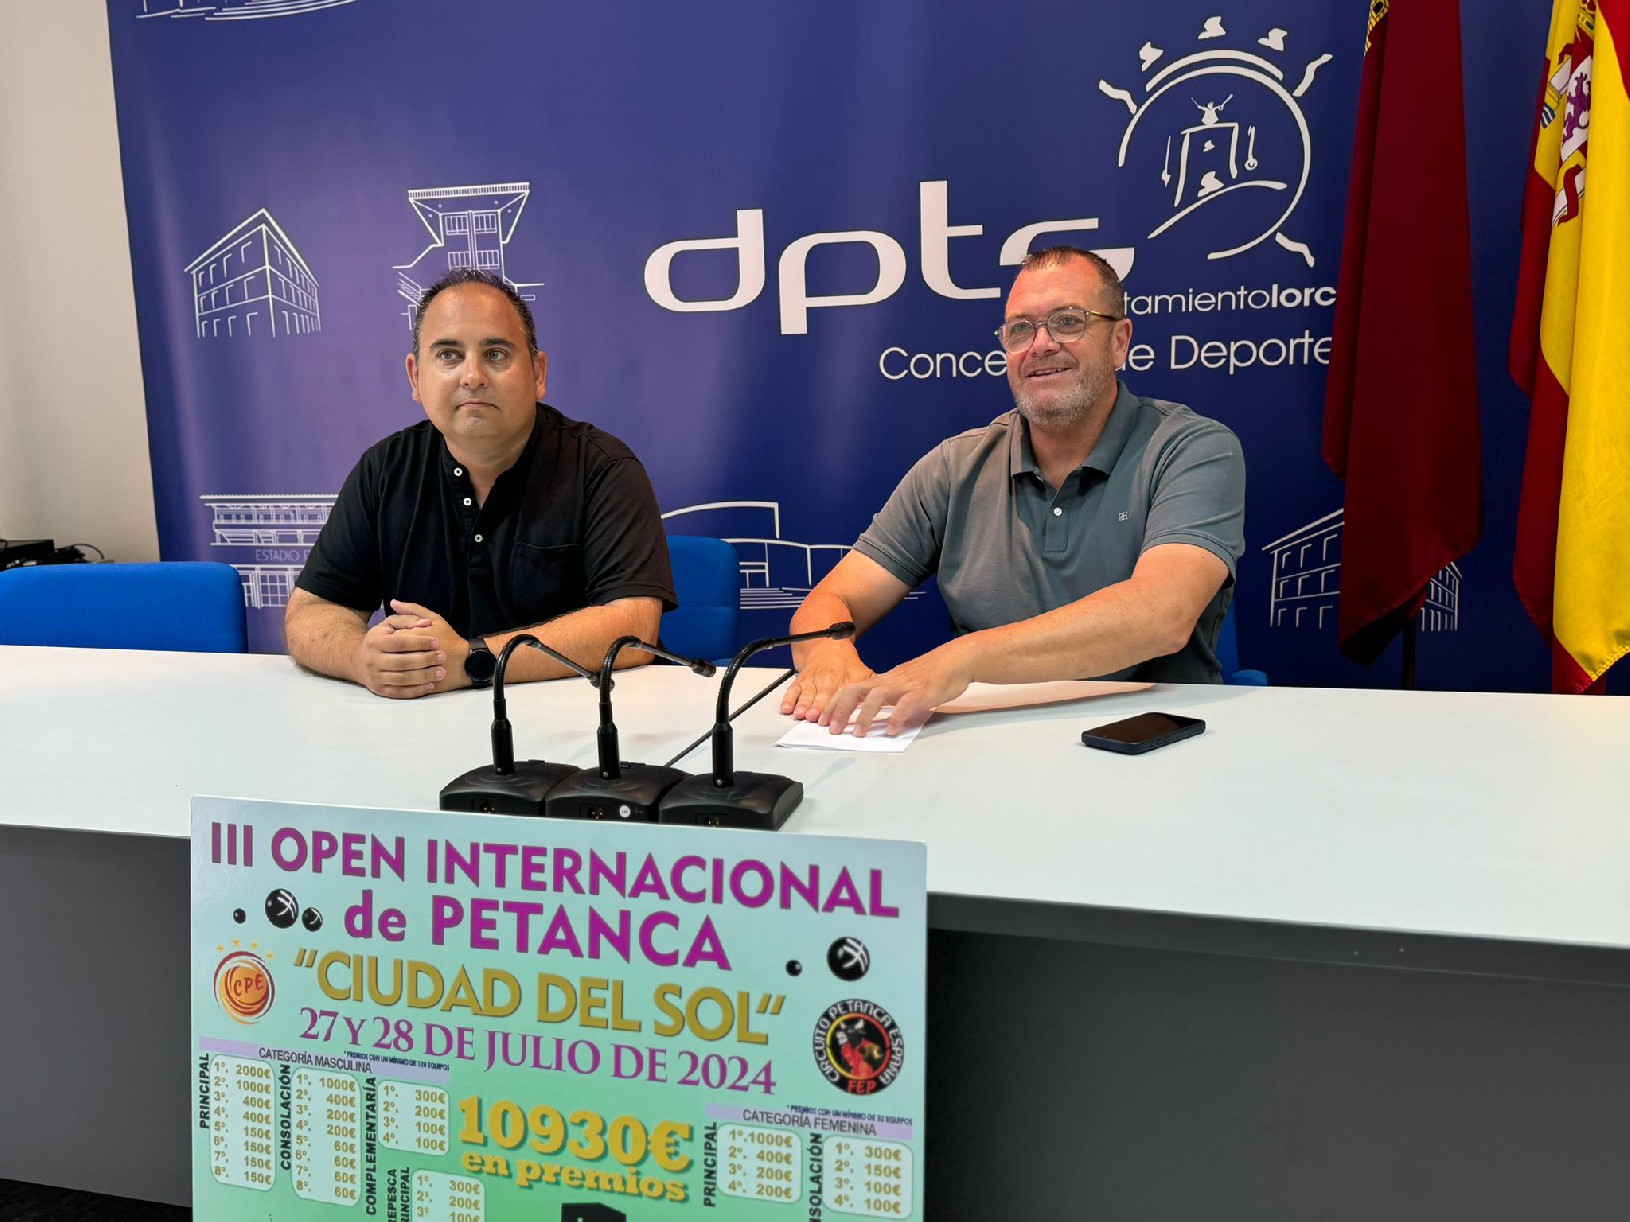 EI III Open Internacional de Petanca ''Ciudad del Sol'' congrega el fin de semana a jugadores europeos y africanos